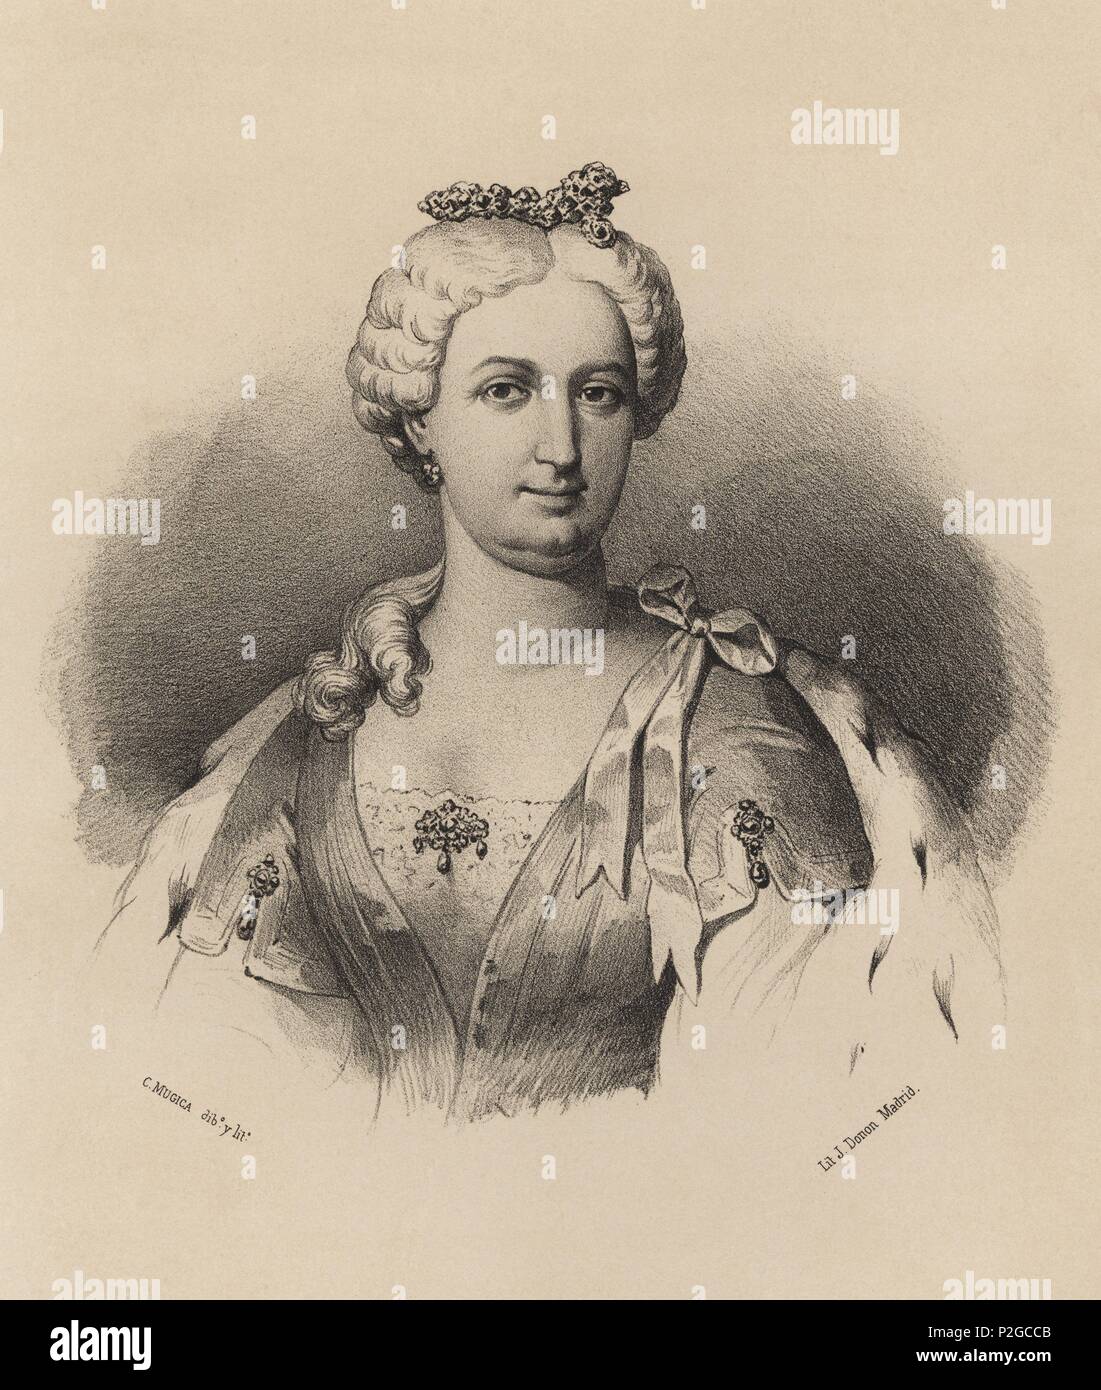 Doña Isabel de Farnesio (1692-1766), segunda esposa de Felipe V. Reina de España desde 1714 a 1746. Grabado de 1870. Stock Photo